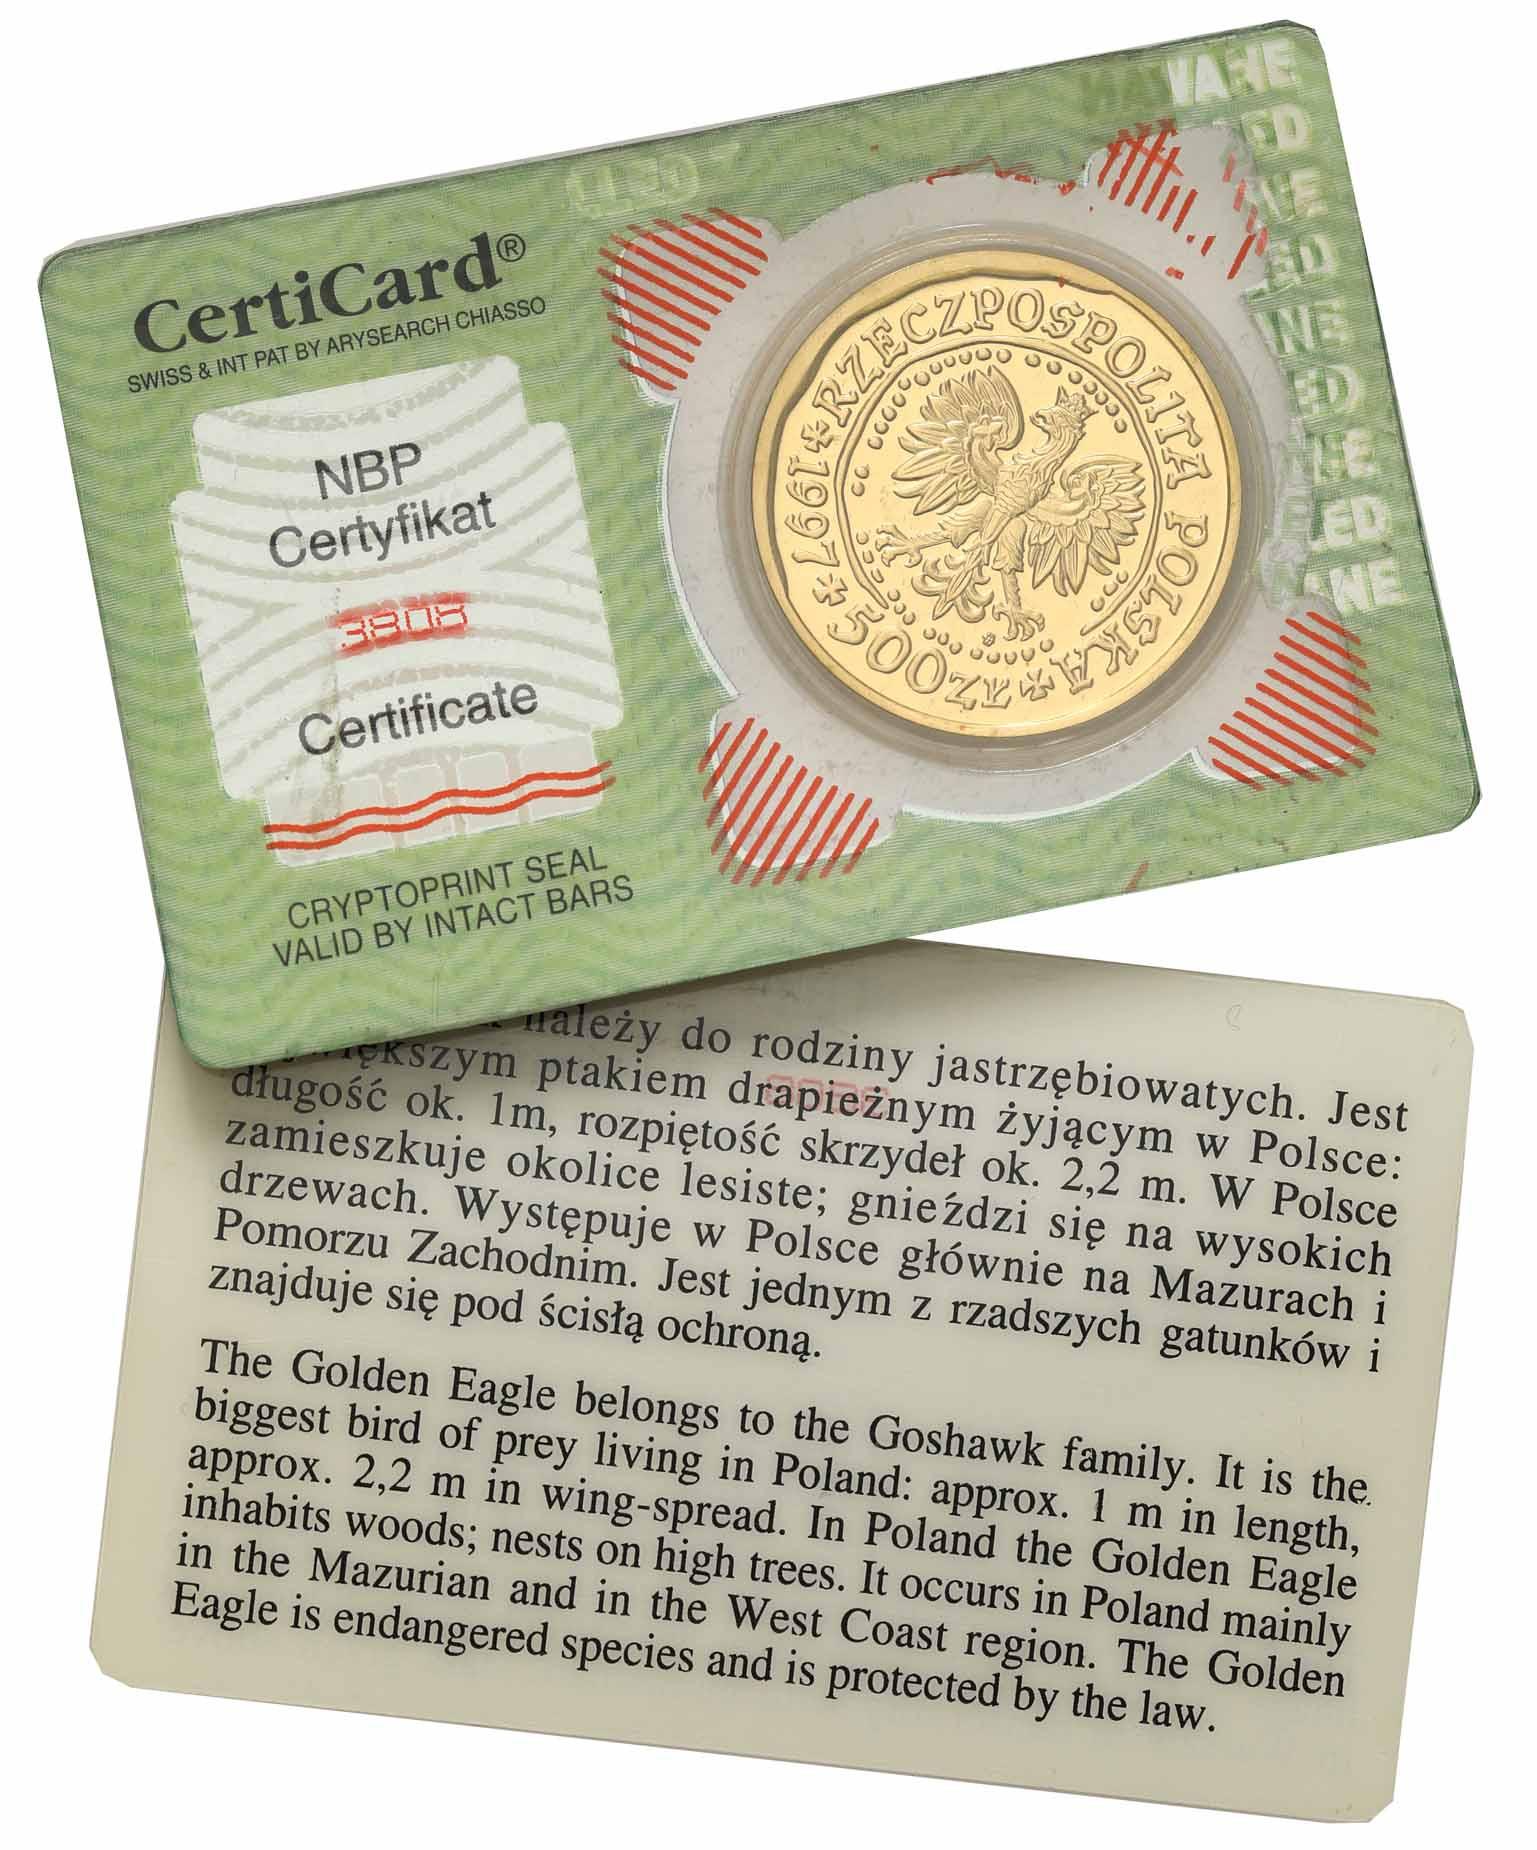 Polska. Złote 500 złotych 1997 Orzeł Bielik - 1 uncja złota